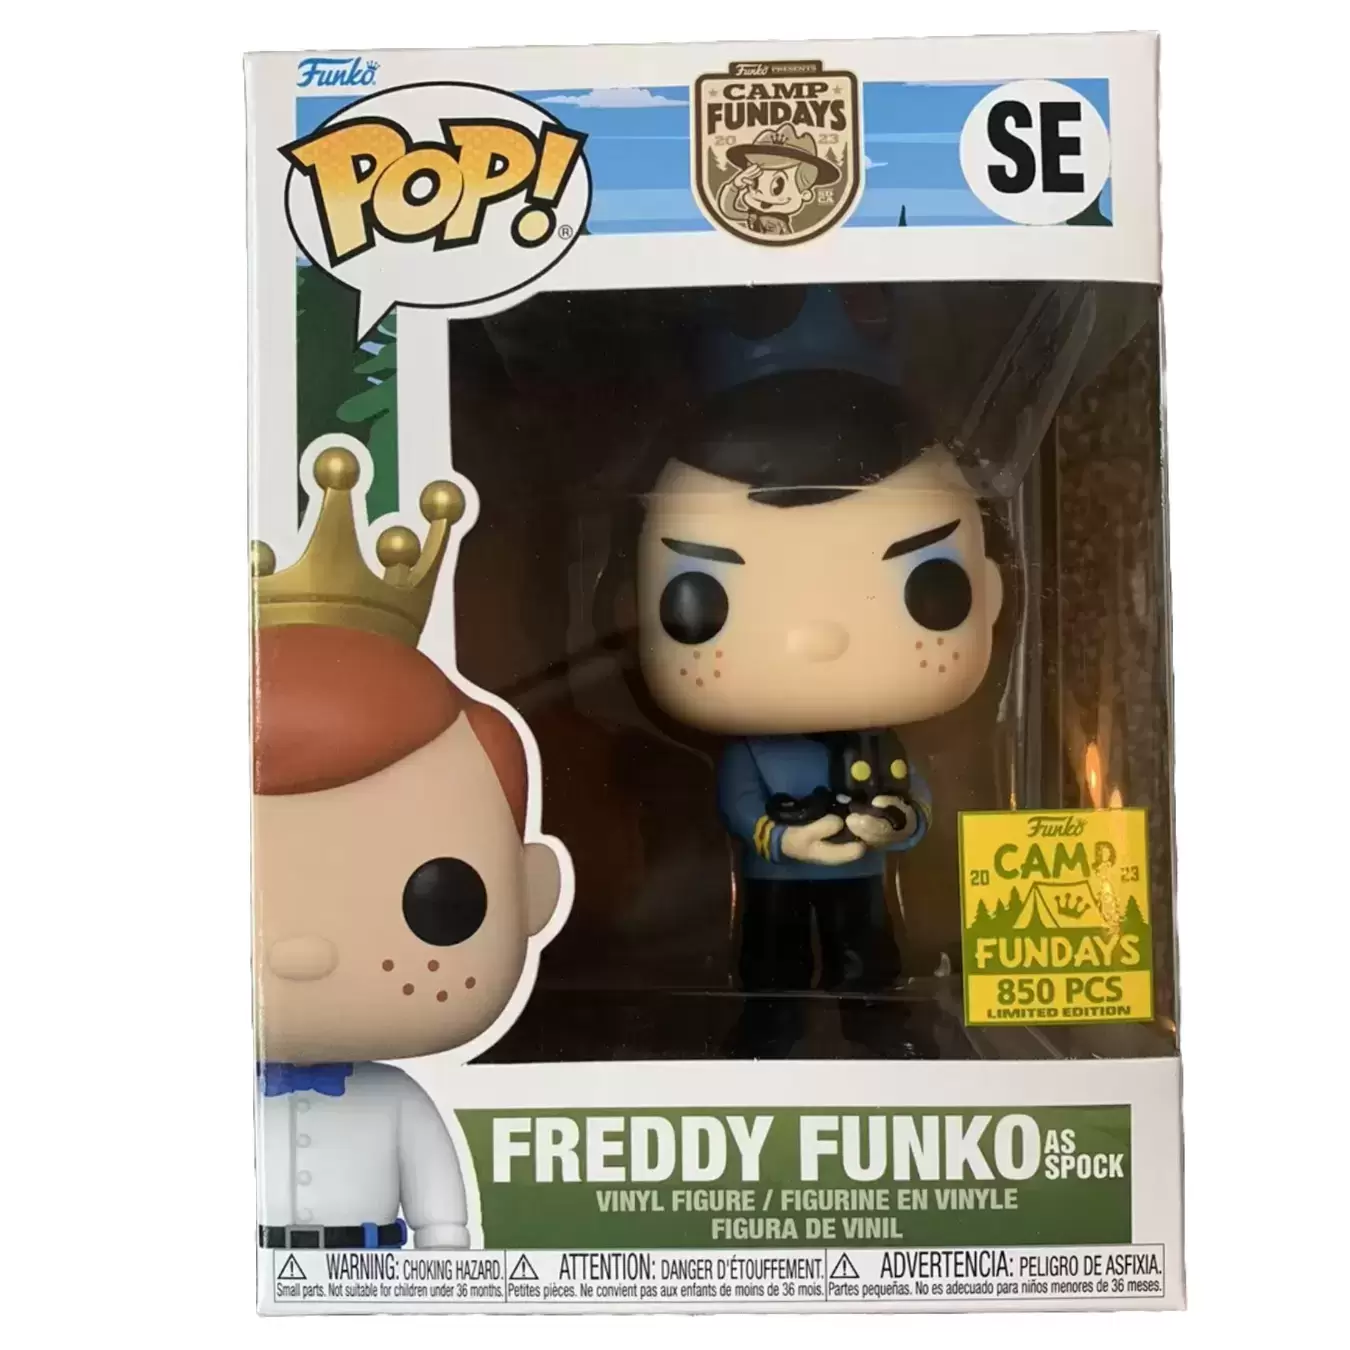 POP! Funko - Funko - Freddy Funko as Spock